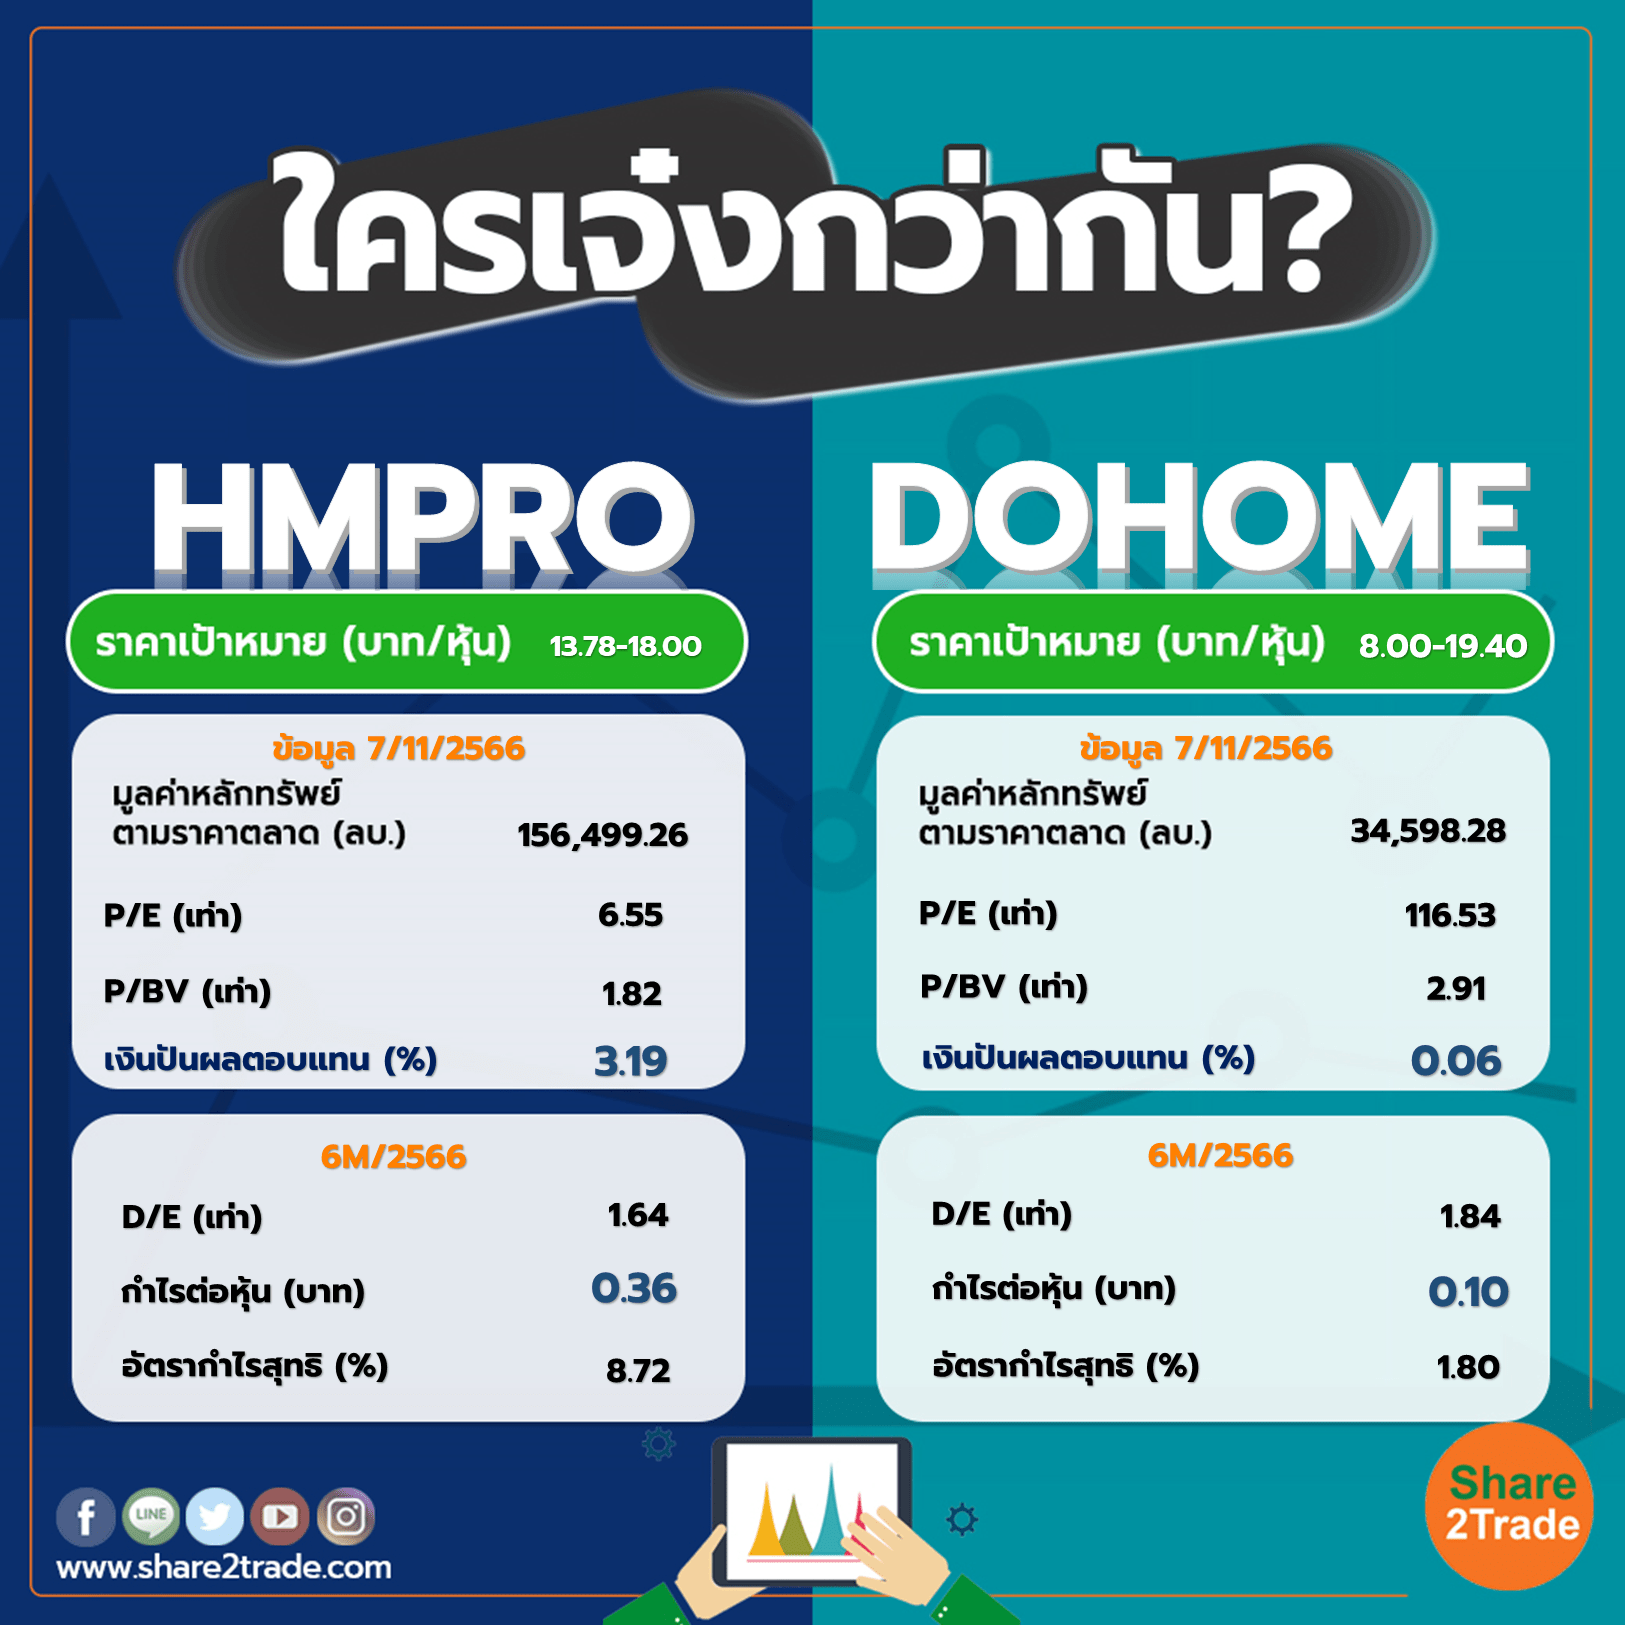 ใครเจ๋งกว่ากัน "HMPRO" VS "DOHOME"